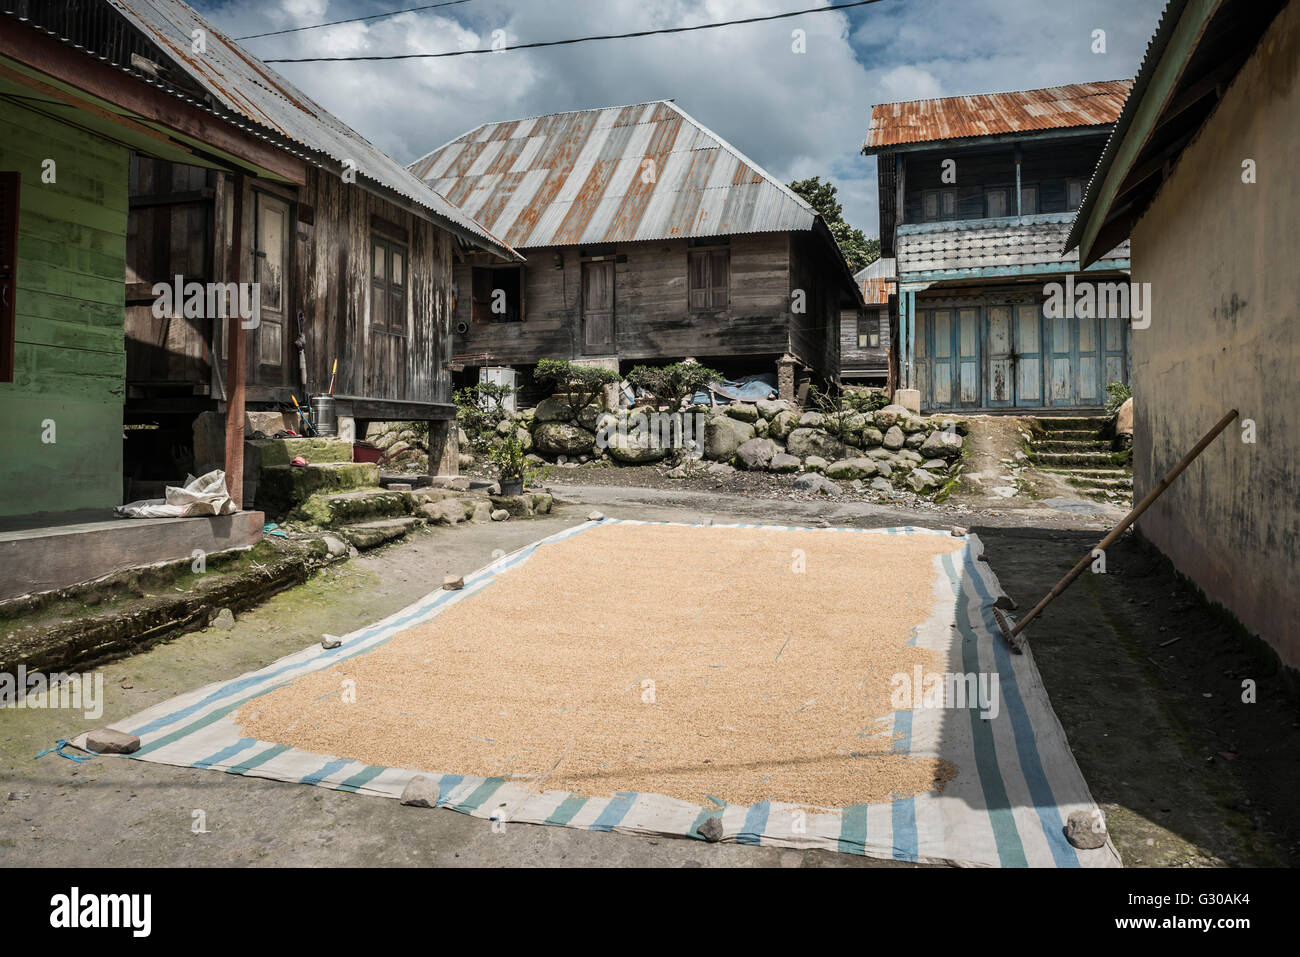 Le séchage des grains de café dans le soleil dans un village au pied du volcan Sinabung, Berastagi (Brastagi), au nord de Sumatra, Indonésie Banque D'Images